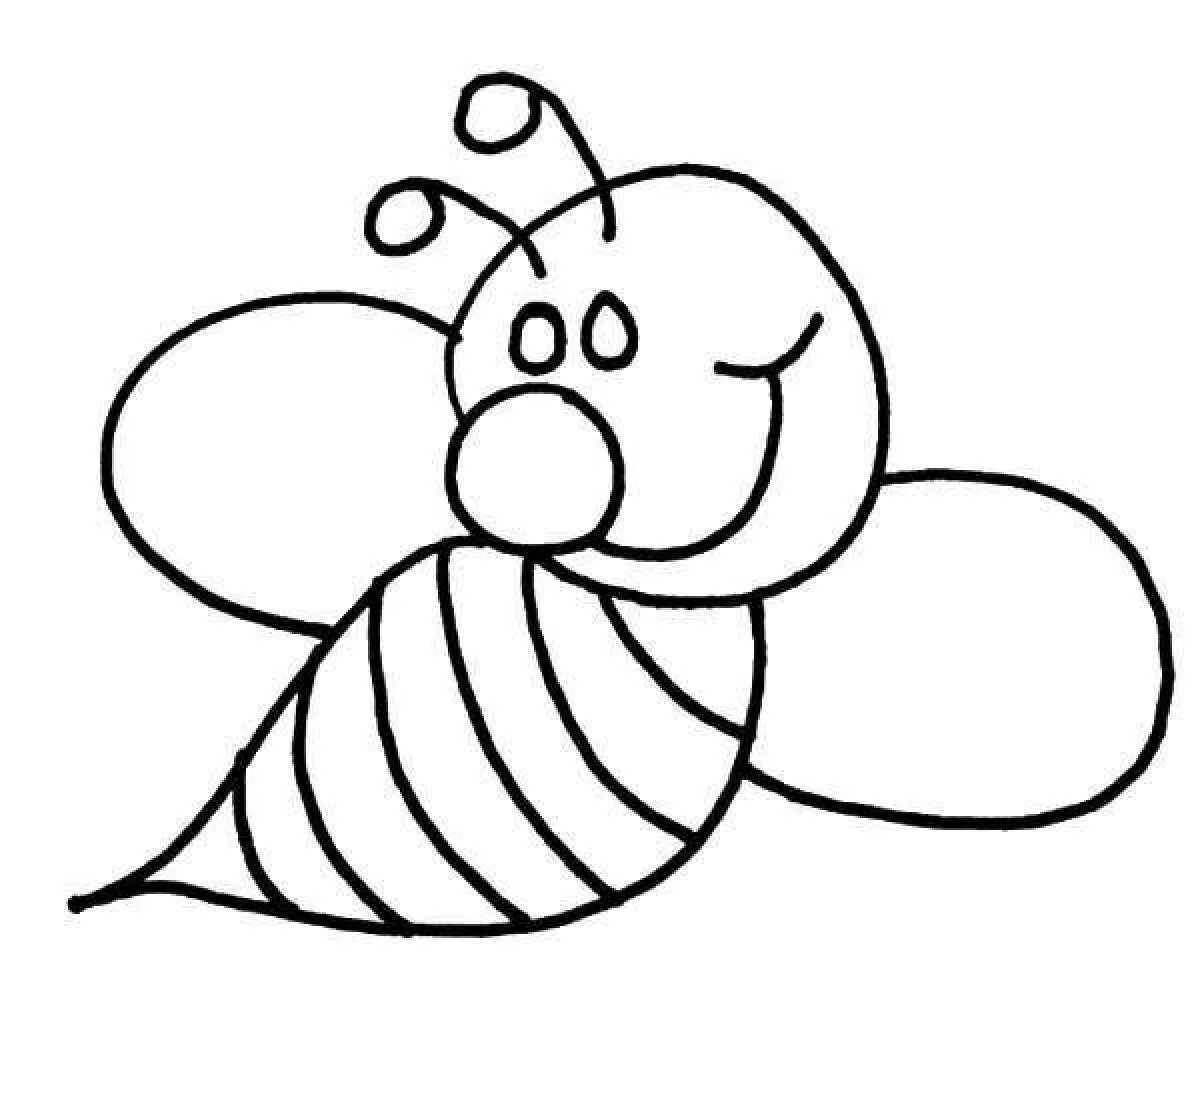 Раскраски для детей 3 лет насекомые. Пчела раскраска для детей. Раскраска пчёлка для детей. Раскраска насекомые для малышей. Насекомые раскраска для детей.